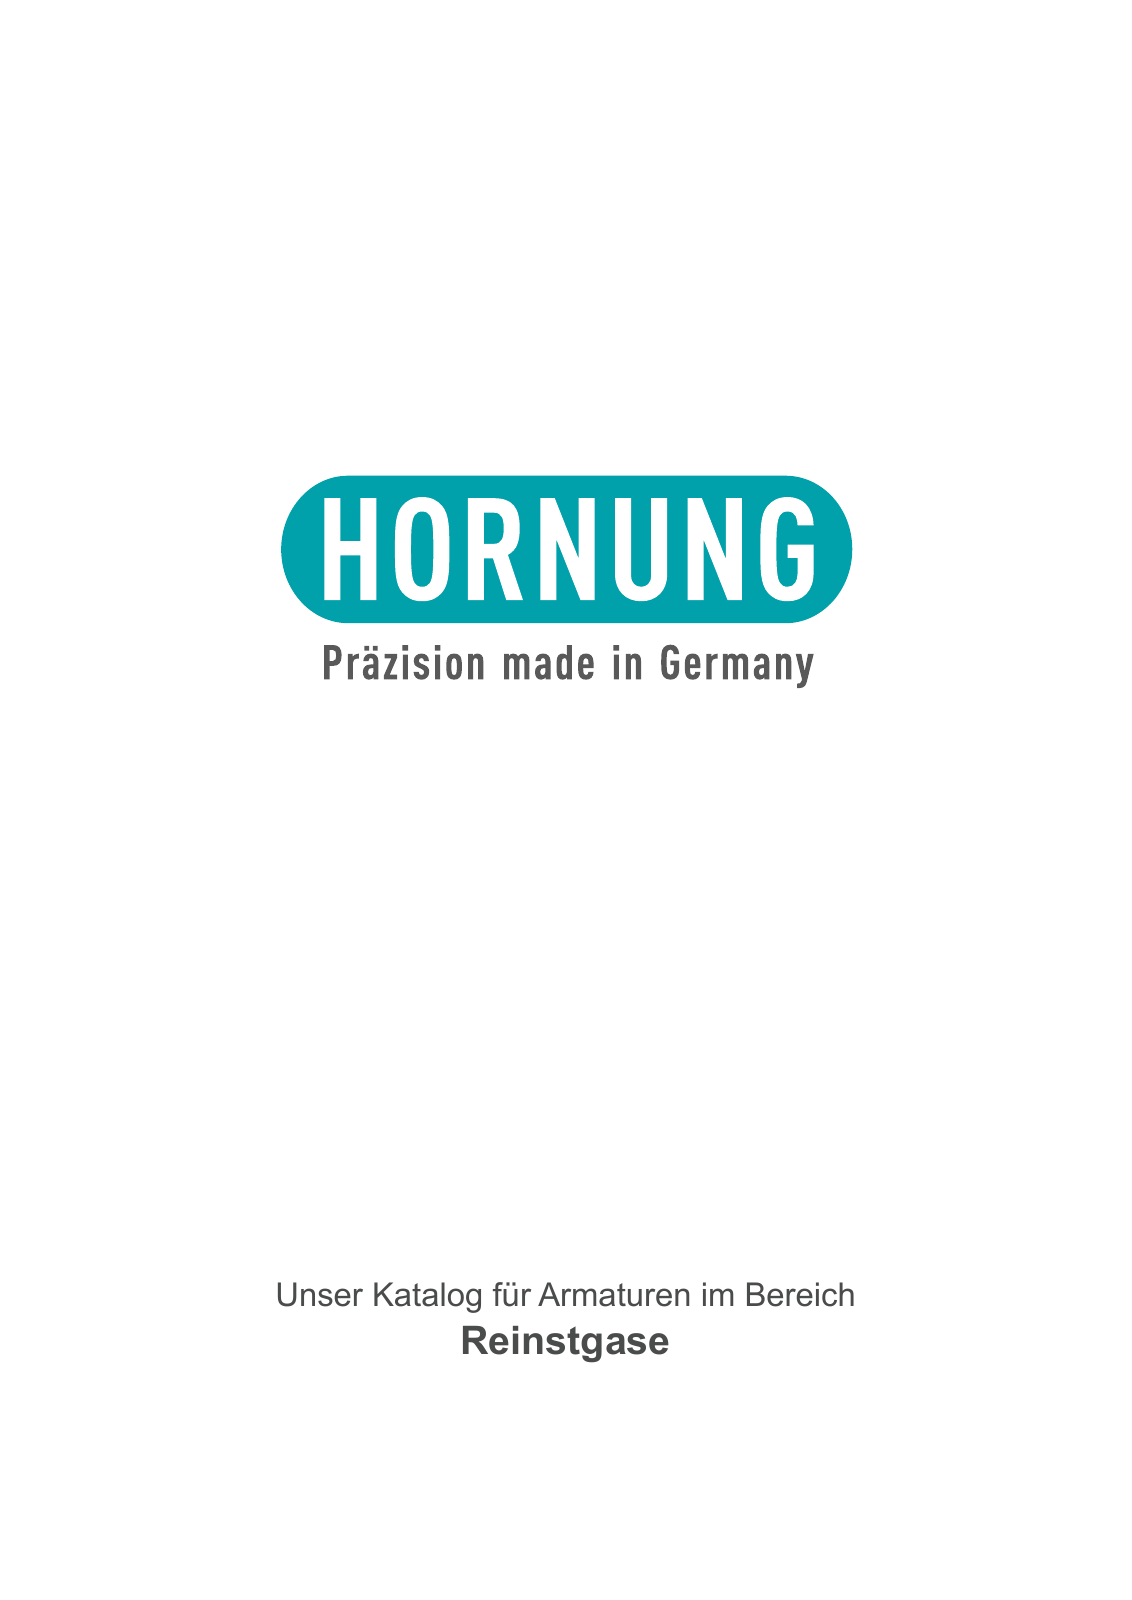 Vorschau Katalog Armaturen für Reinstgase - Hornung GmbH Seite 1